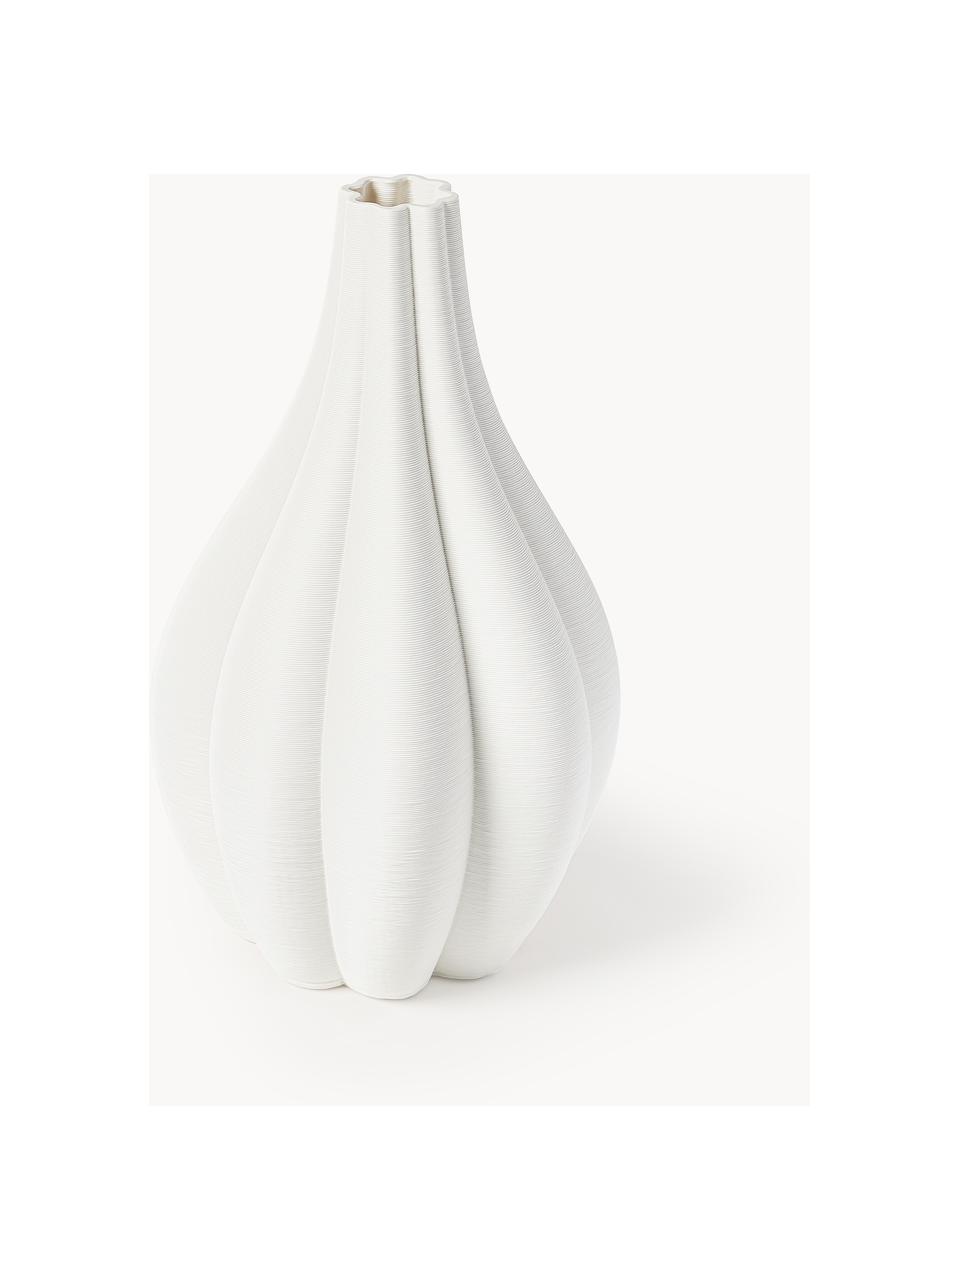 Große 3D gedruckte Vase Melody aus Porzellan, Porzellan, Weiß, Ø 23 x H 40 cm